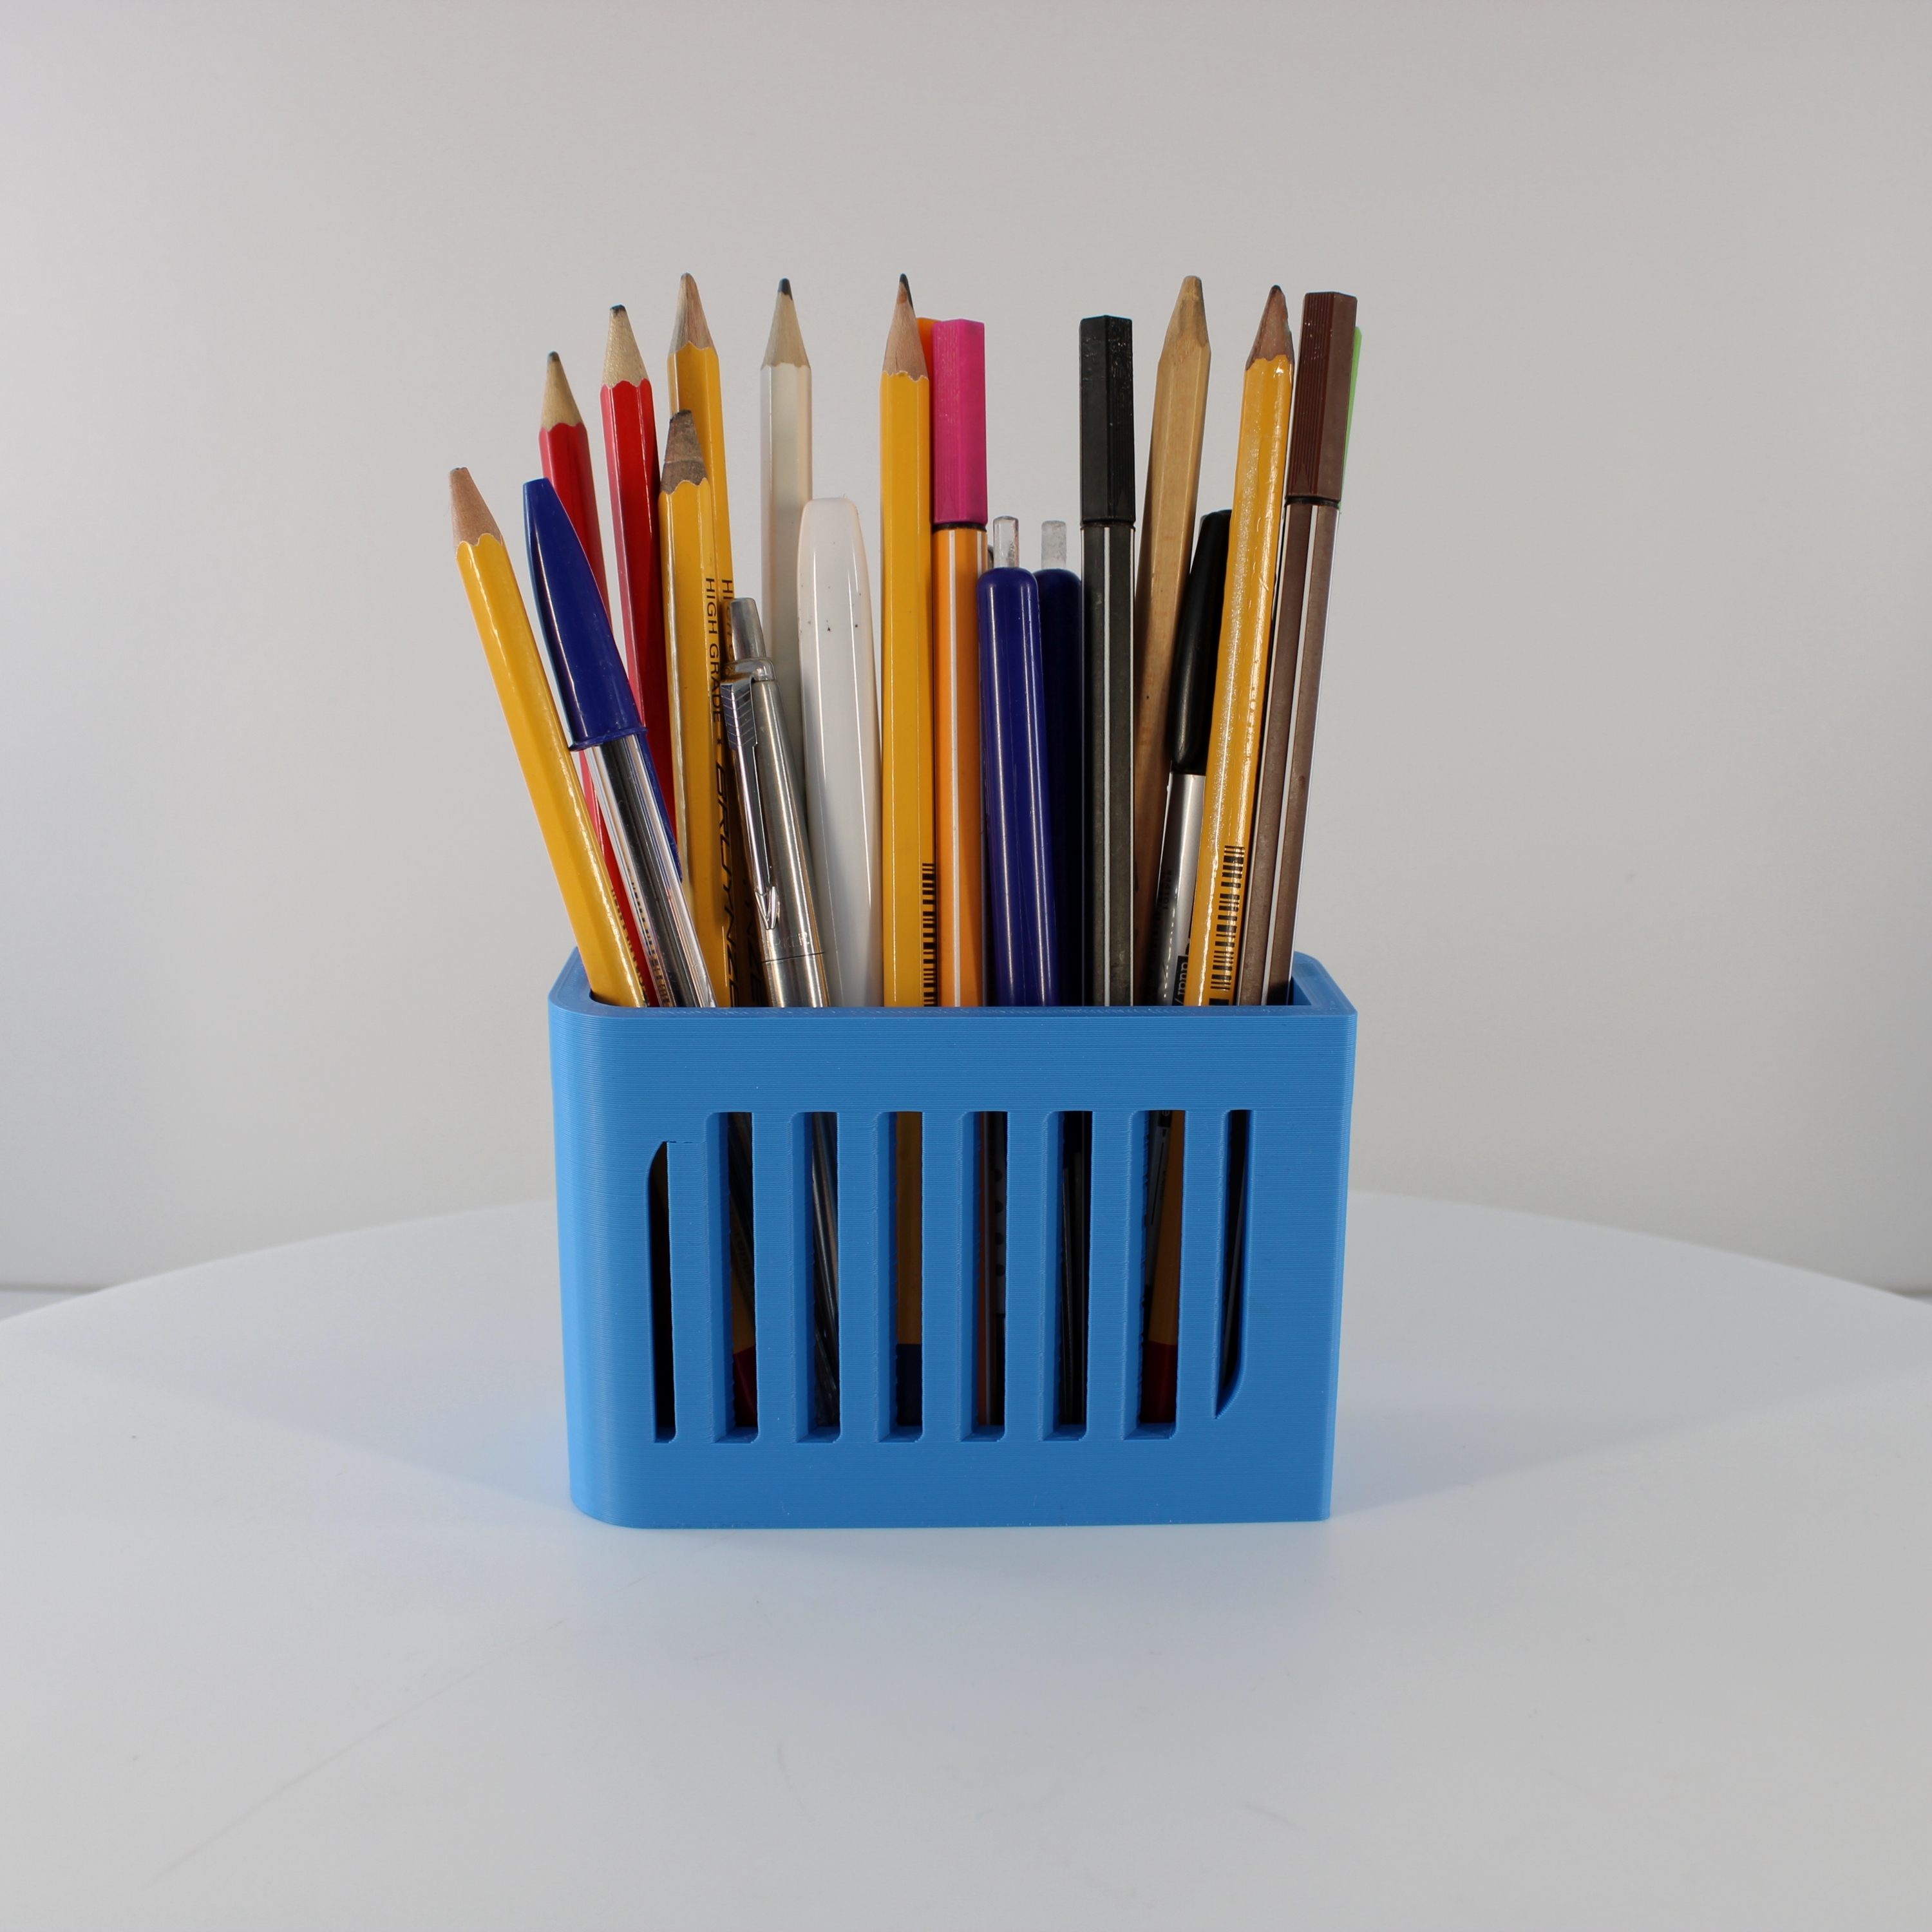 Pencil Organizer, Desk Decor